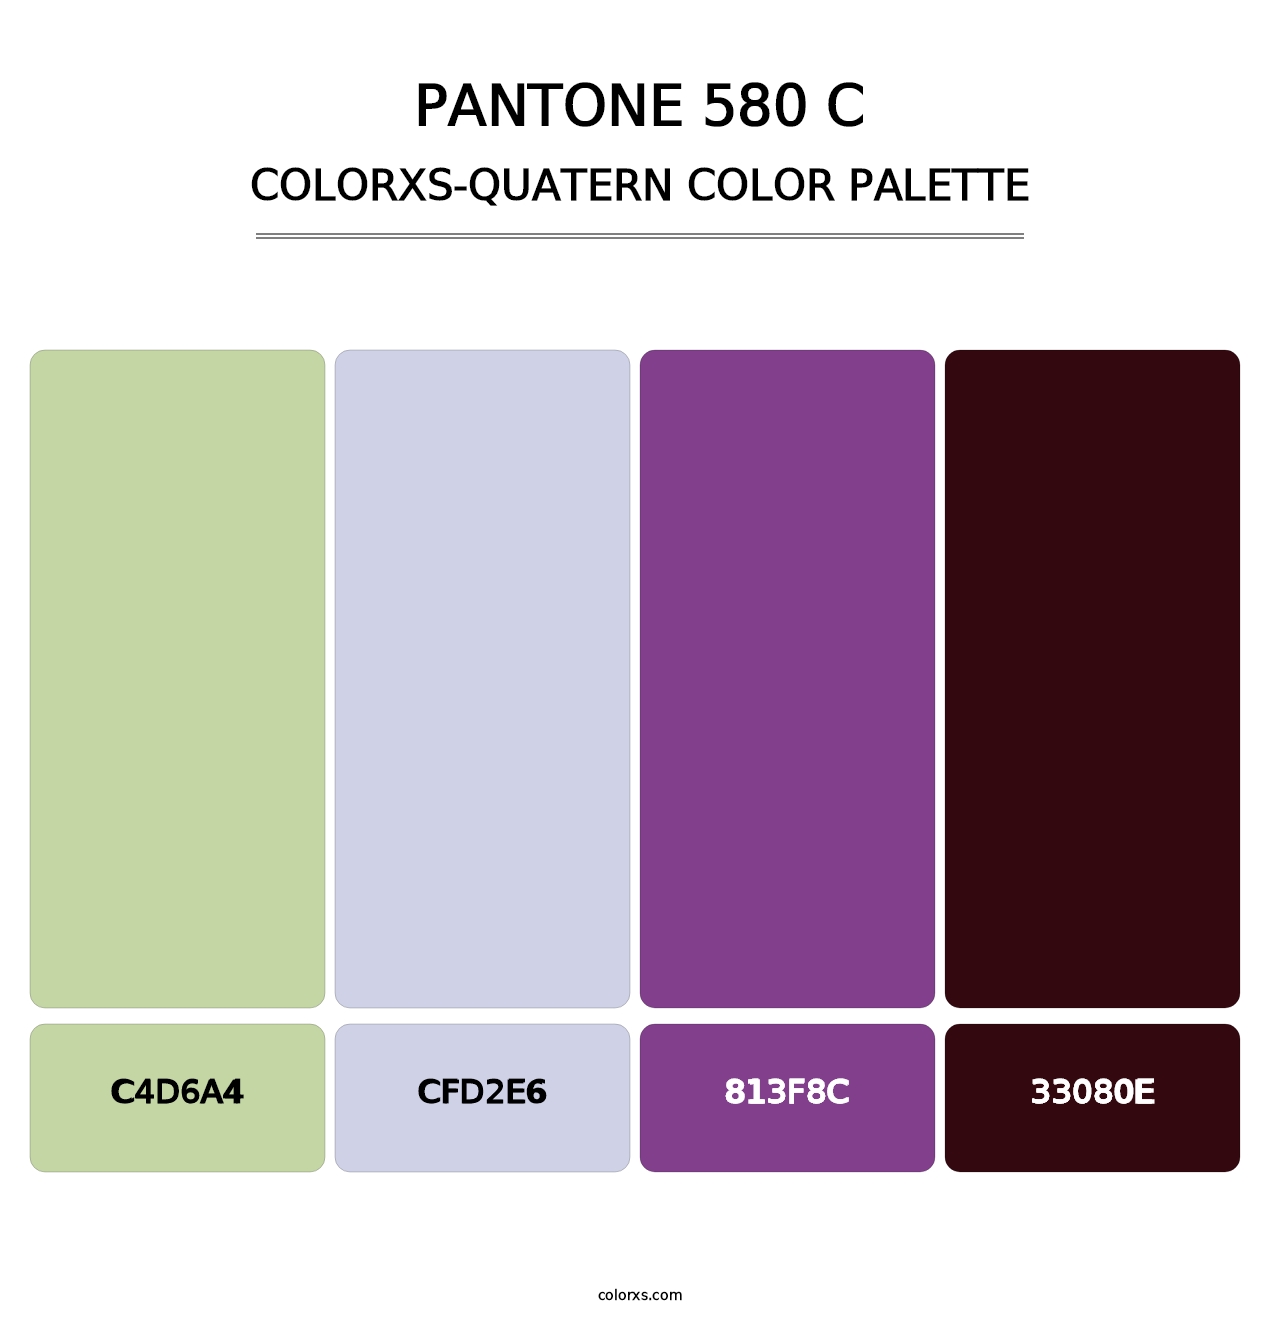 PANTONE 580 C - Colorxs Quatern Palette